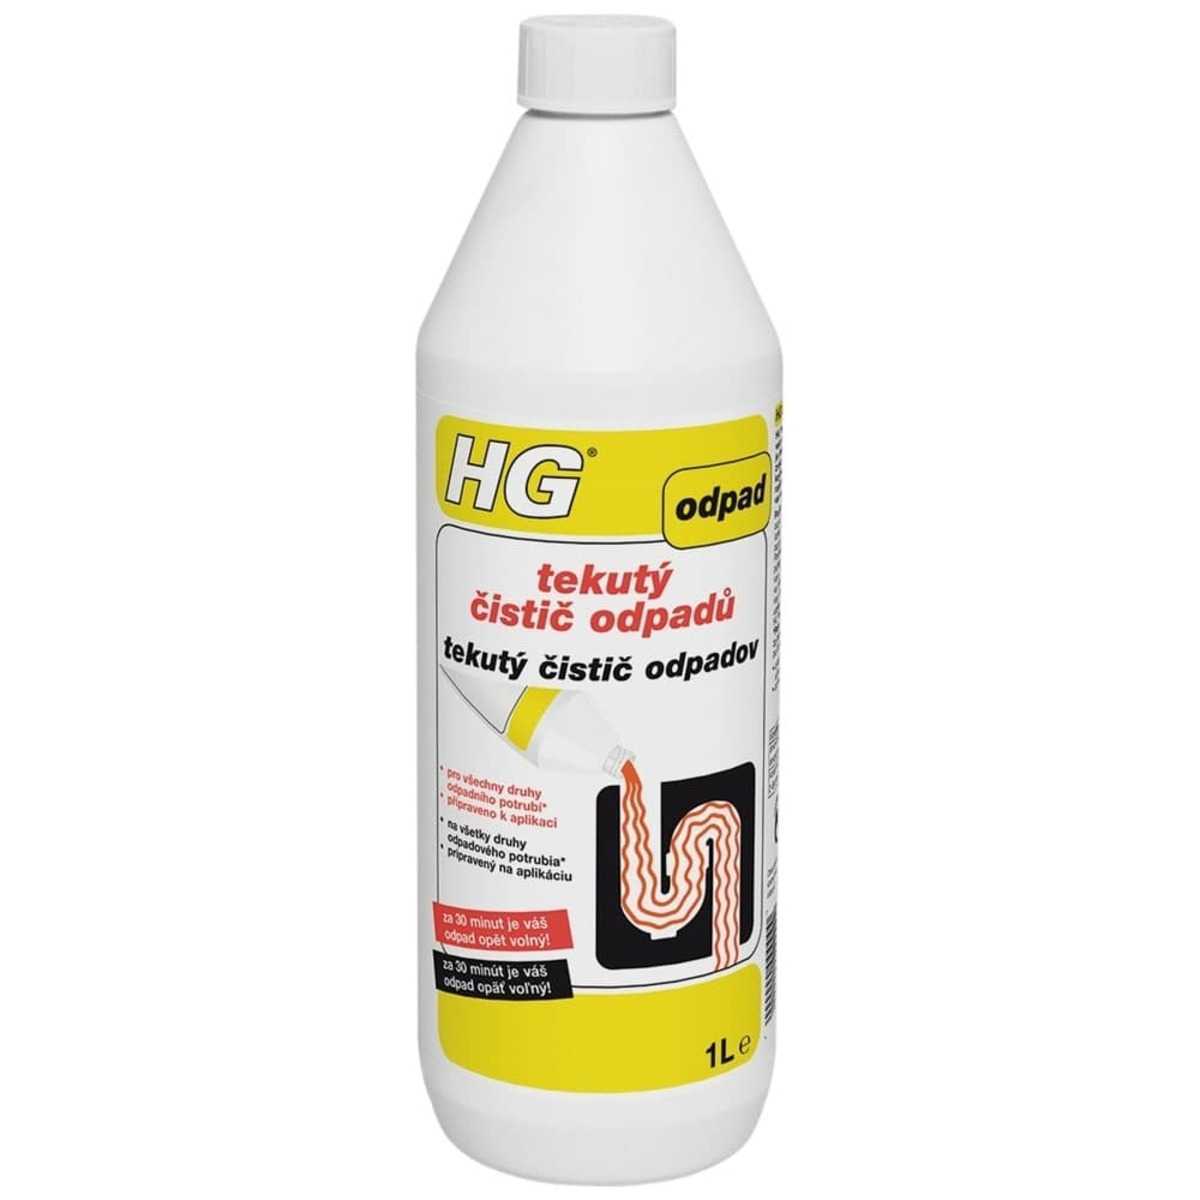 HG tekutý čistič odpadů HGTCO HG